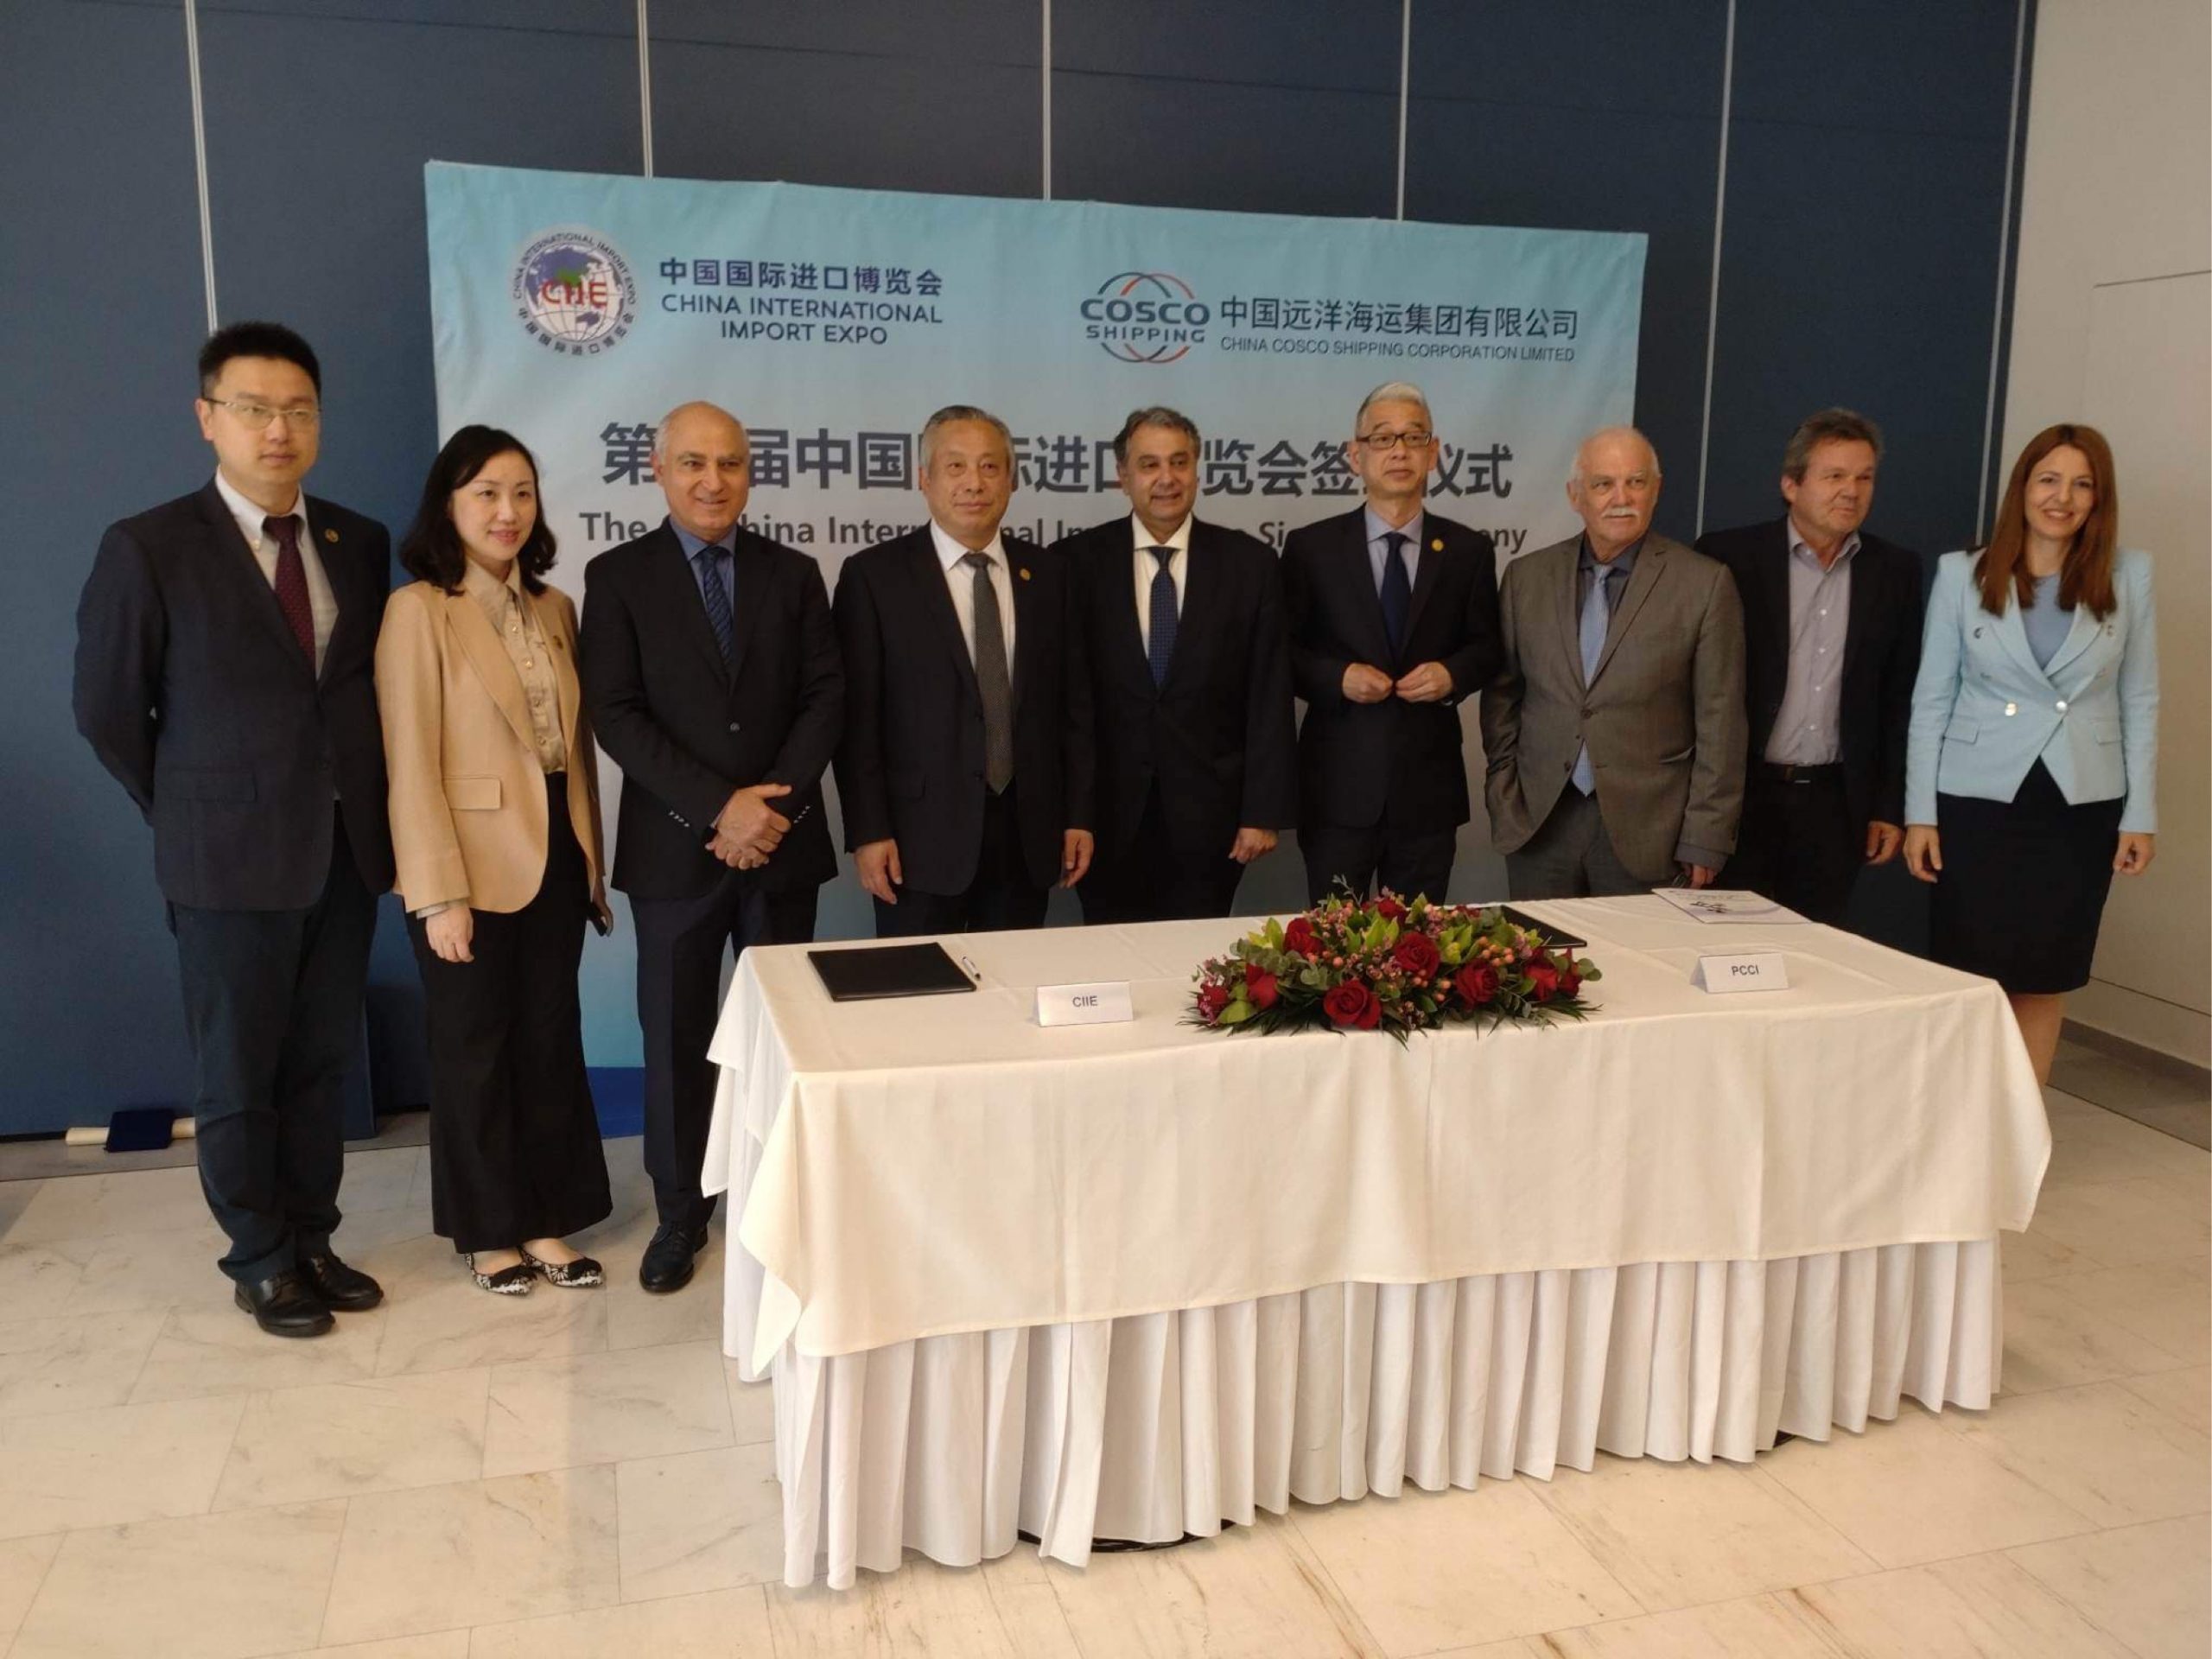 ΕΒΕΠ: Μνημόνιο συνεργασίας με τις κινεζικές αρχές για την ενίσχυση των ελληνικών εξαγωγών